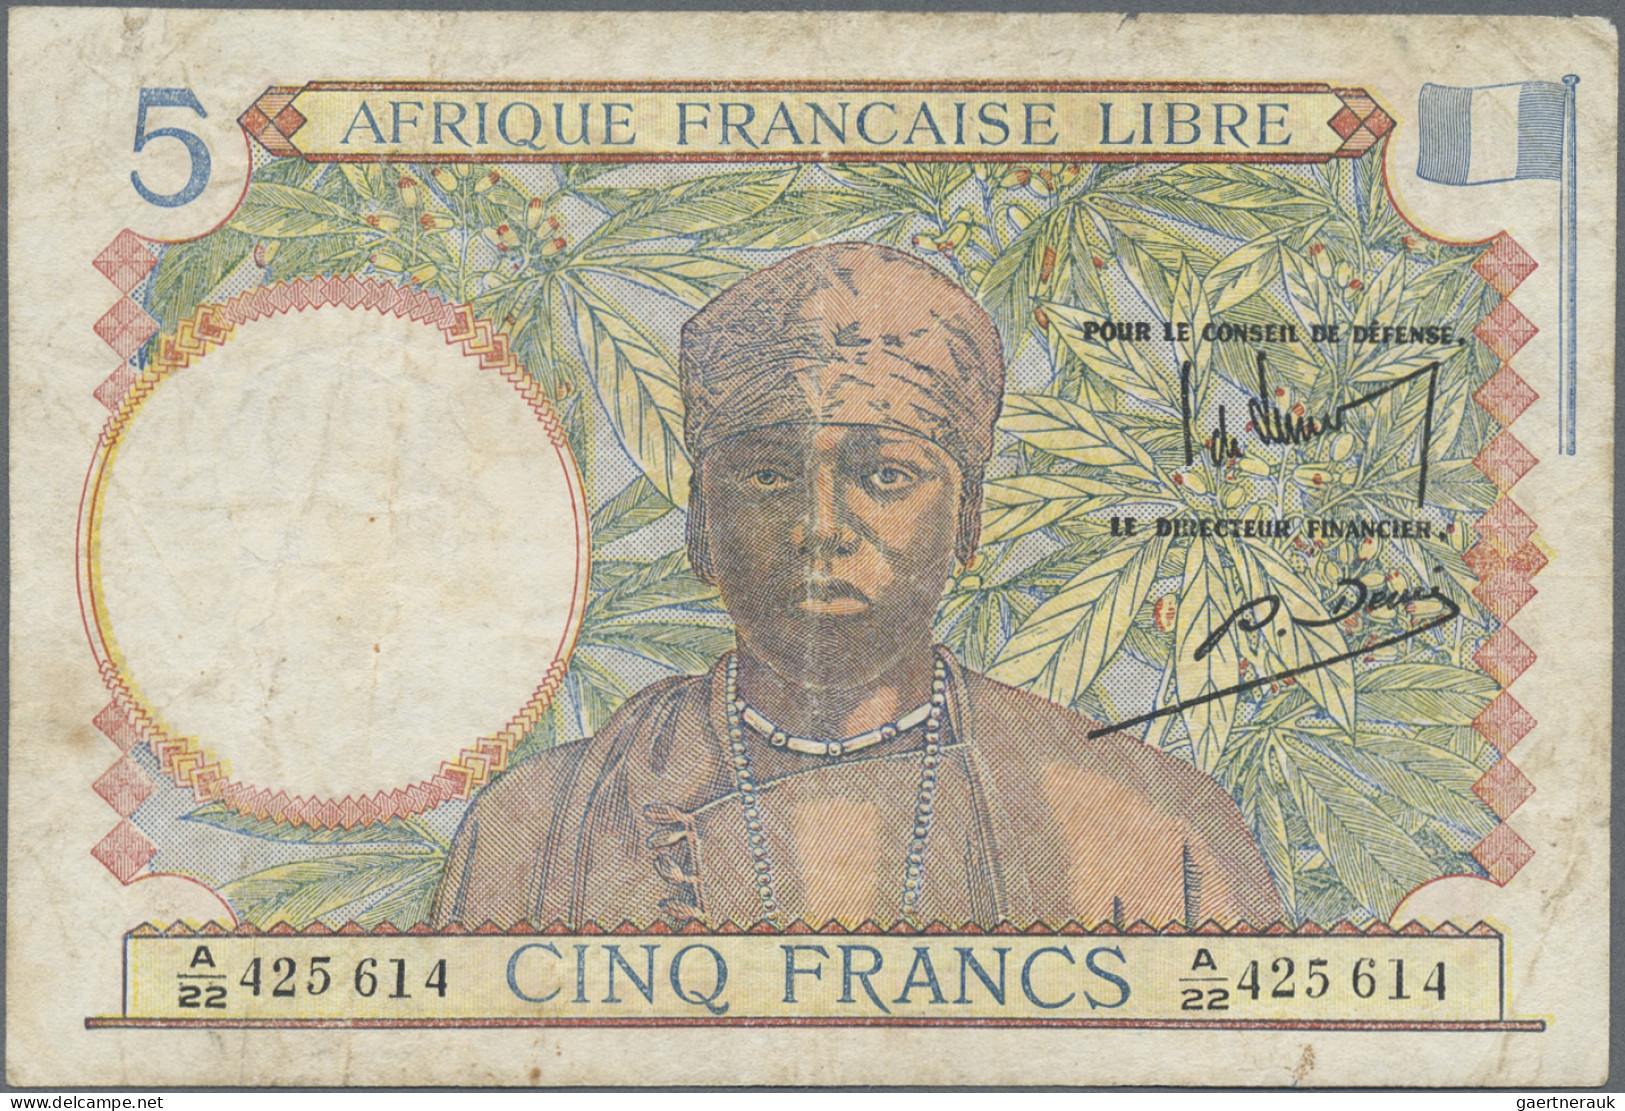 French Equatorial Africa: Afrique Française Libre, Caisse Centrale De La France - Guinea Ecuatorial